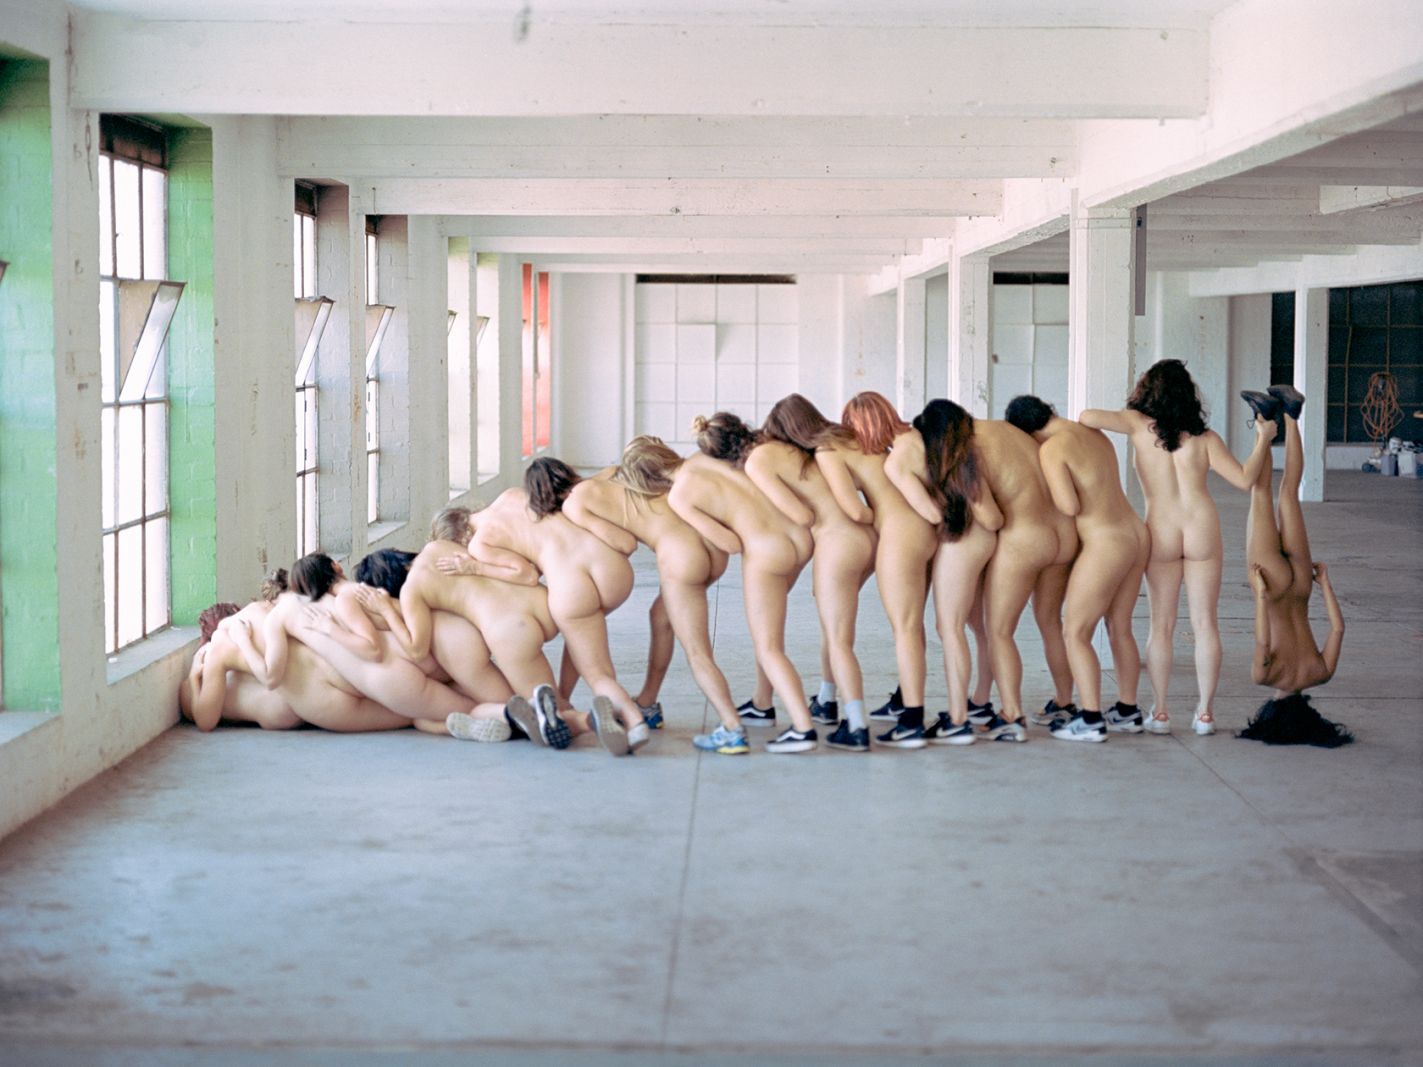 Den nøgne, rene krop sættes fri i AdeYs fotokunst</br>Diversitet i fysik, race og seksualitet er omdrejningspunktet for hans kunst.</br>Foto: AdeY